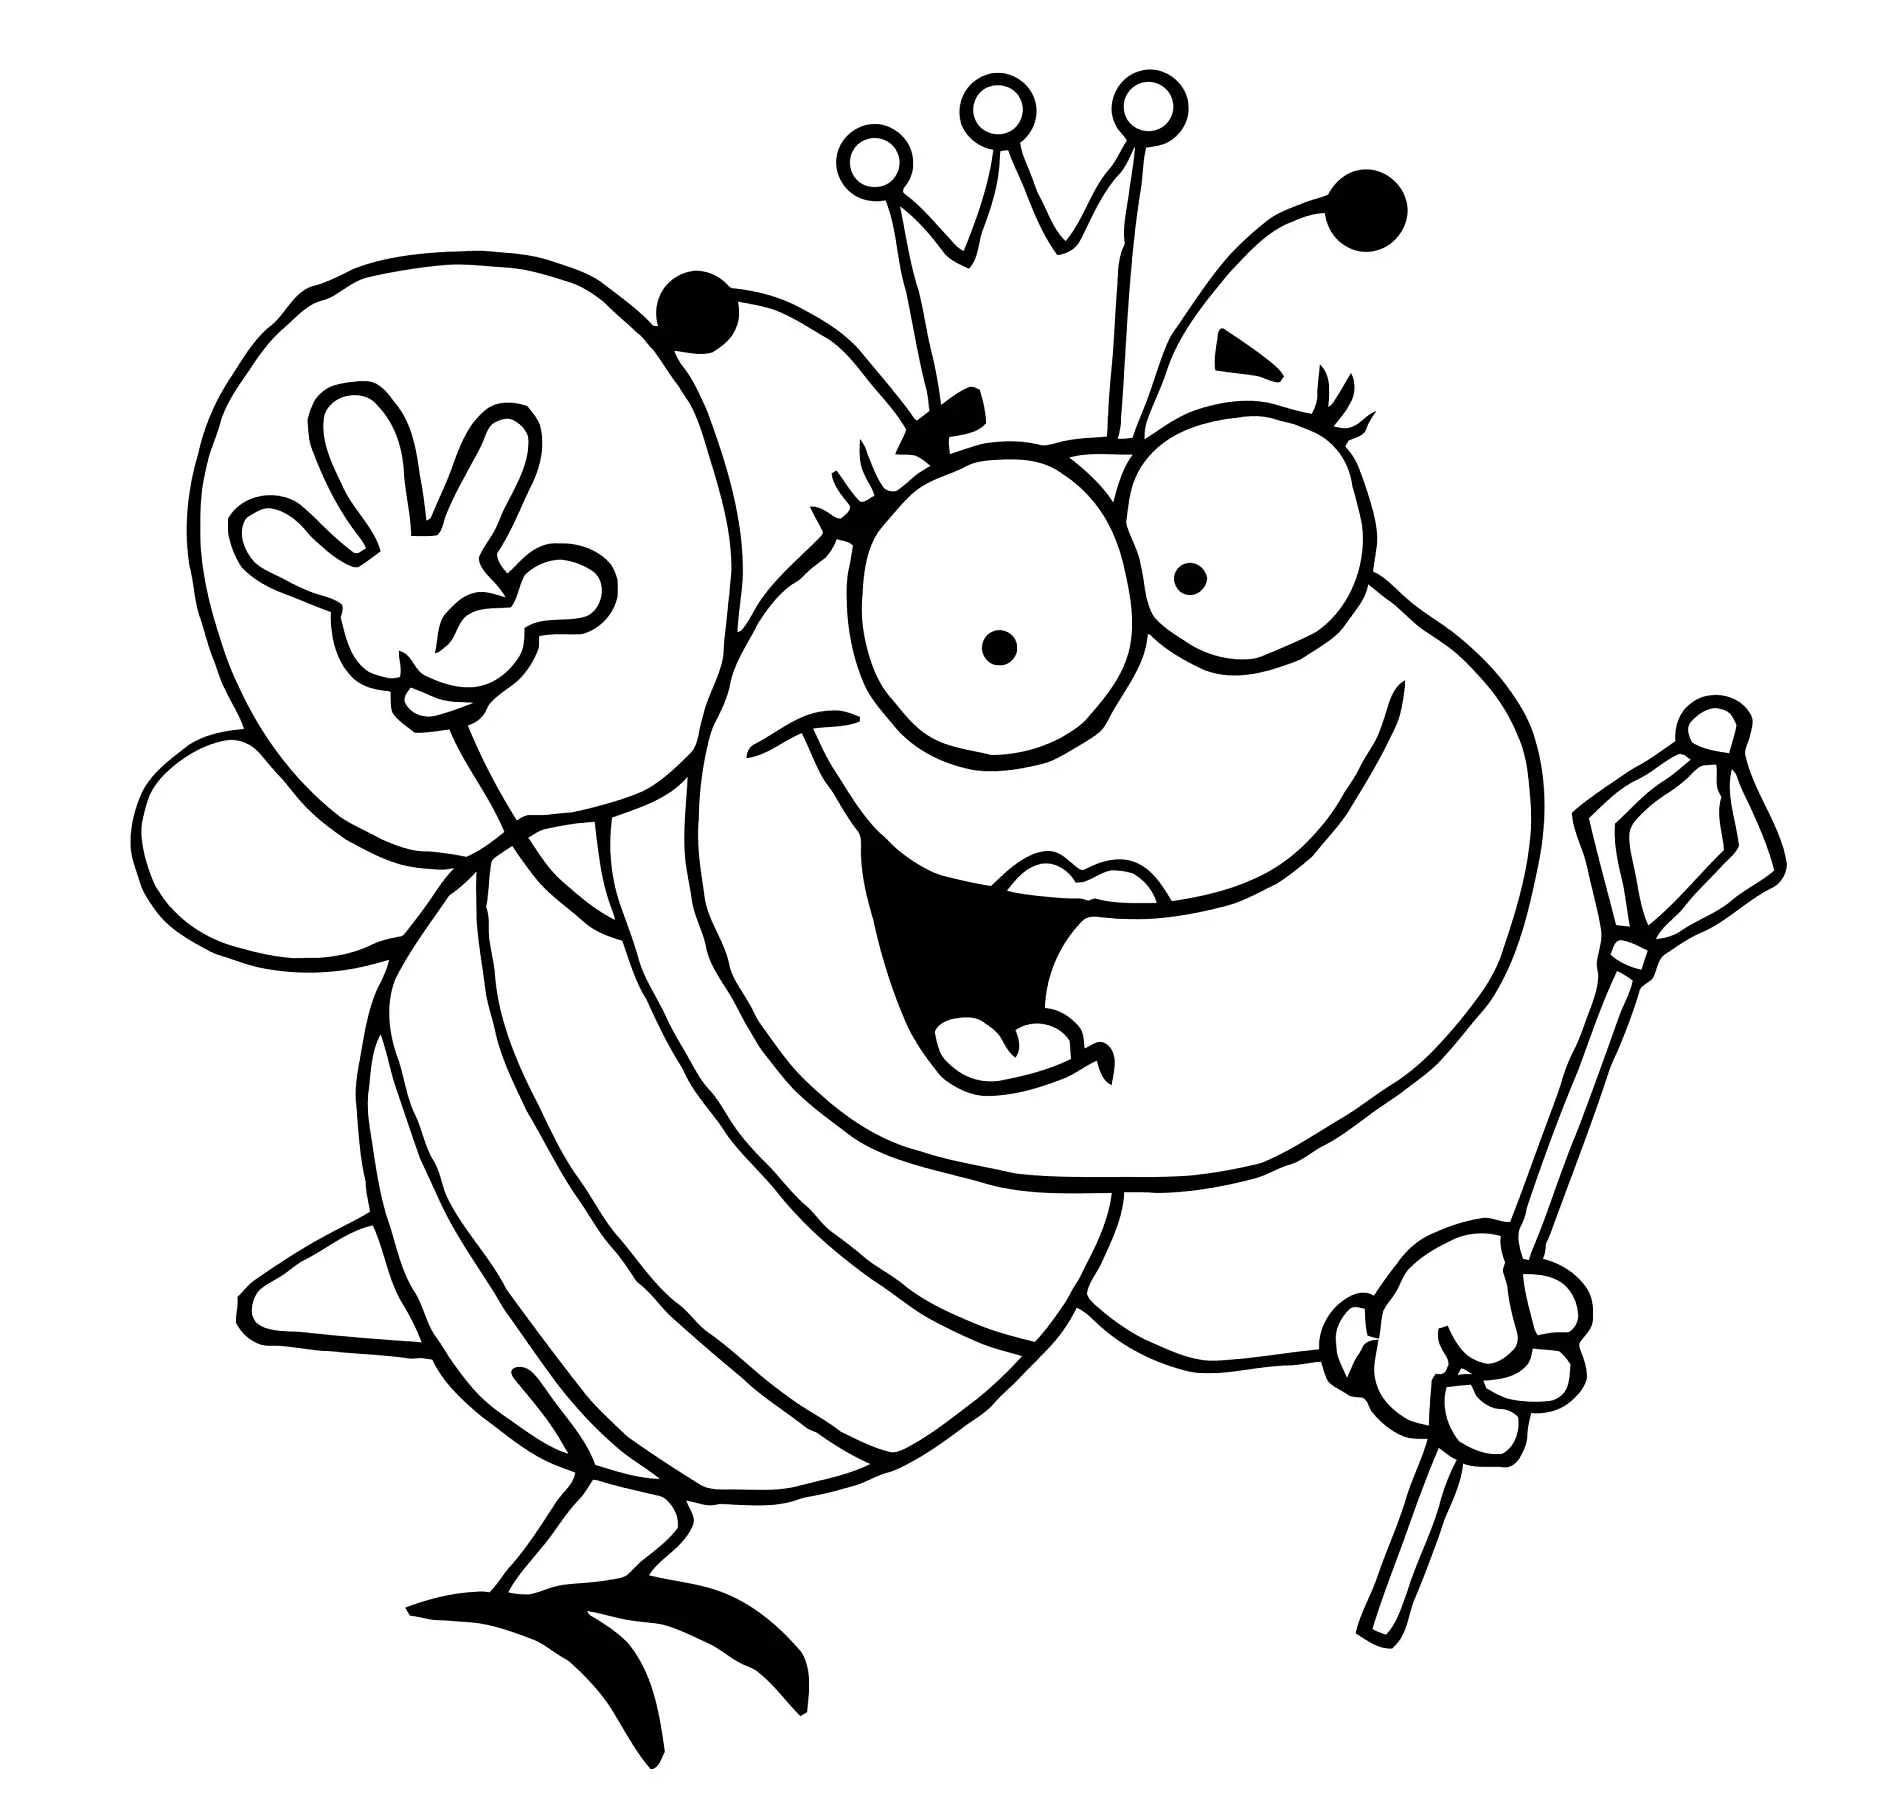 Ausmalbild Biene mit Krone und Zepter winkend